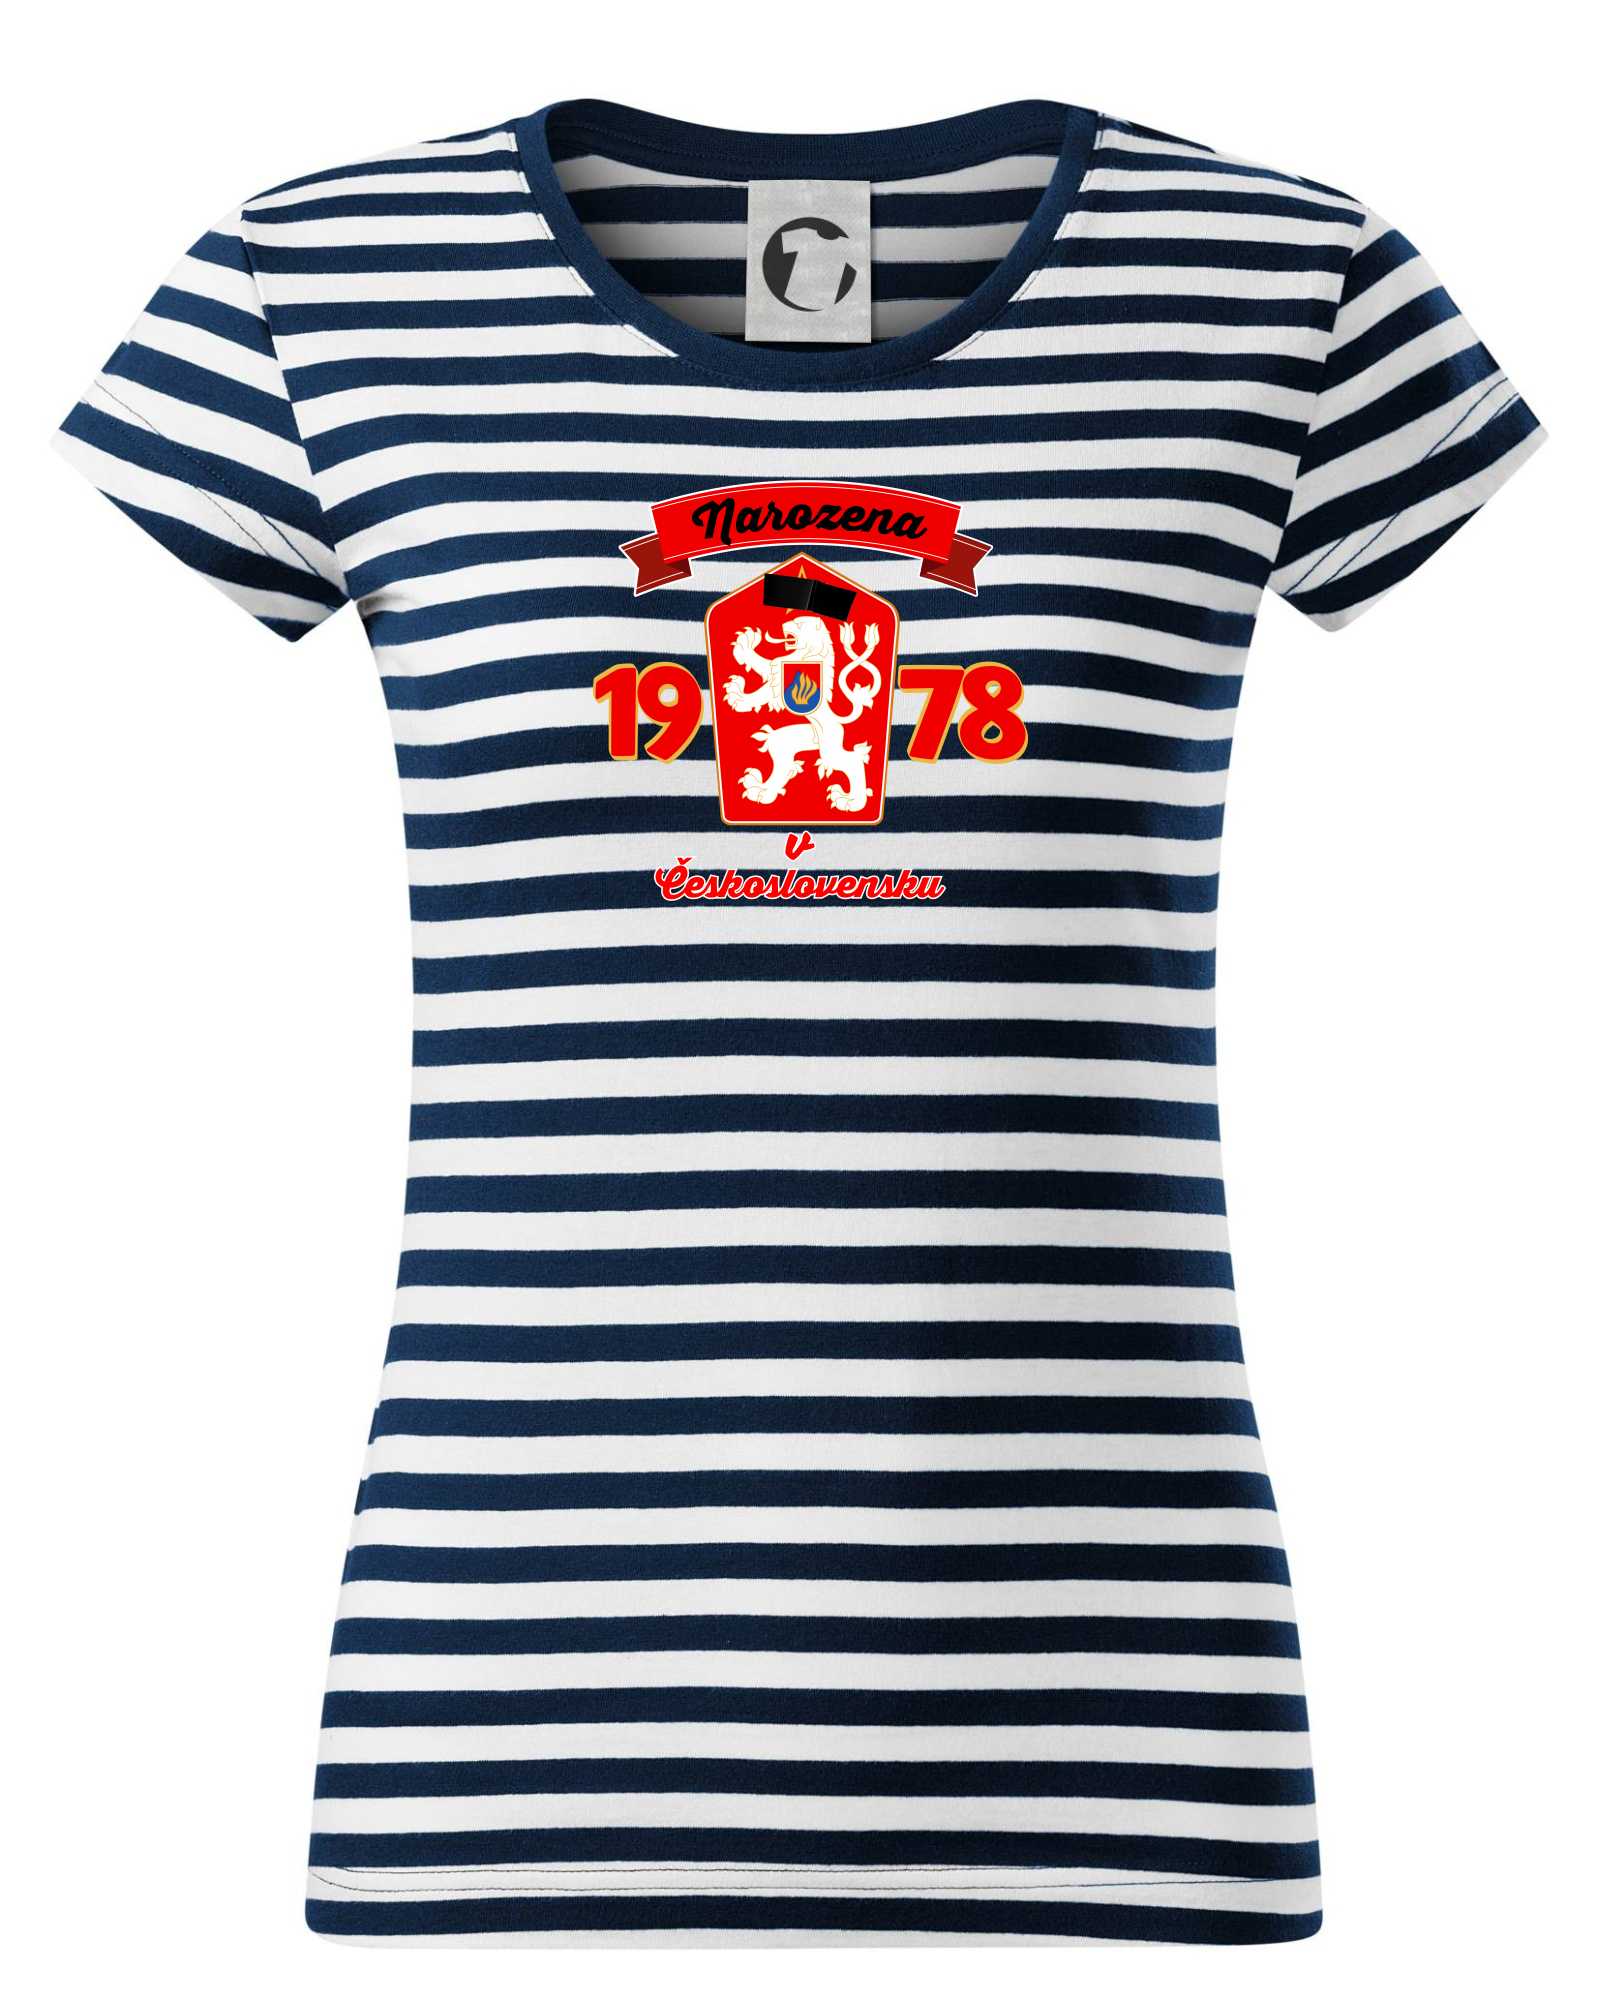 Levně Narozena v Československu - Přelepený znak 1978 - Sailor dámské triko